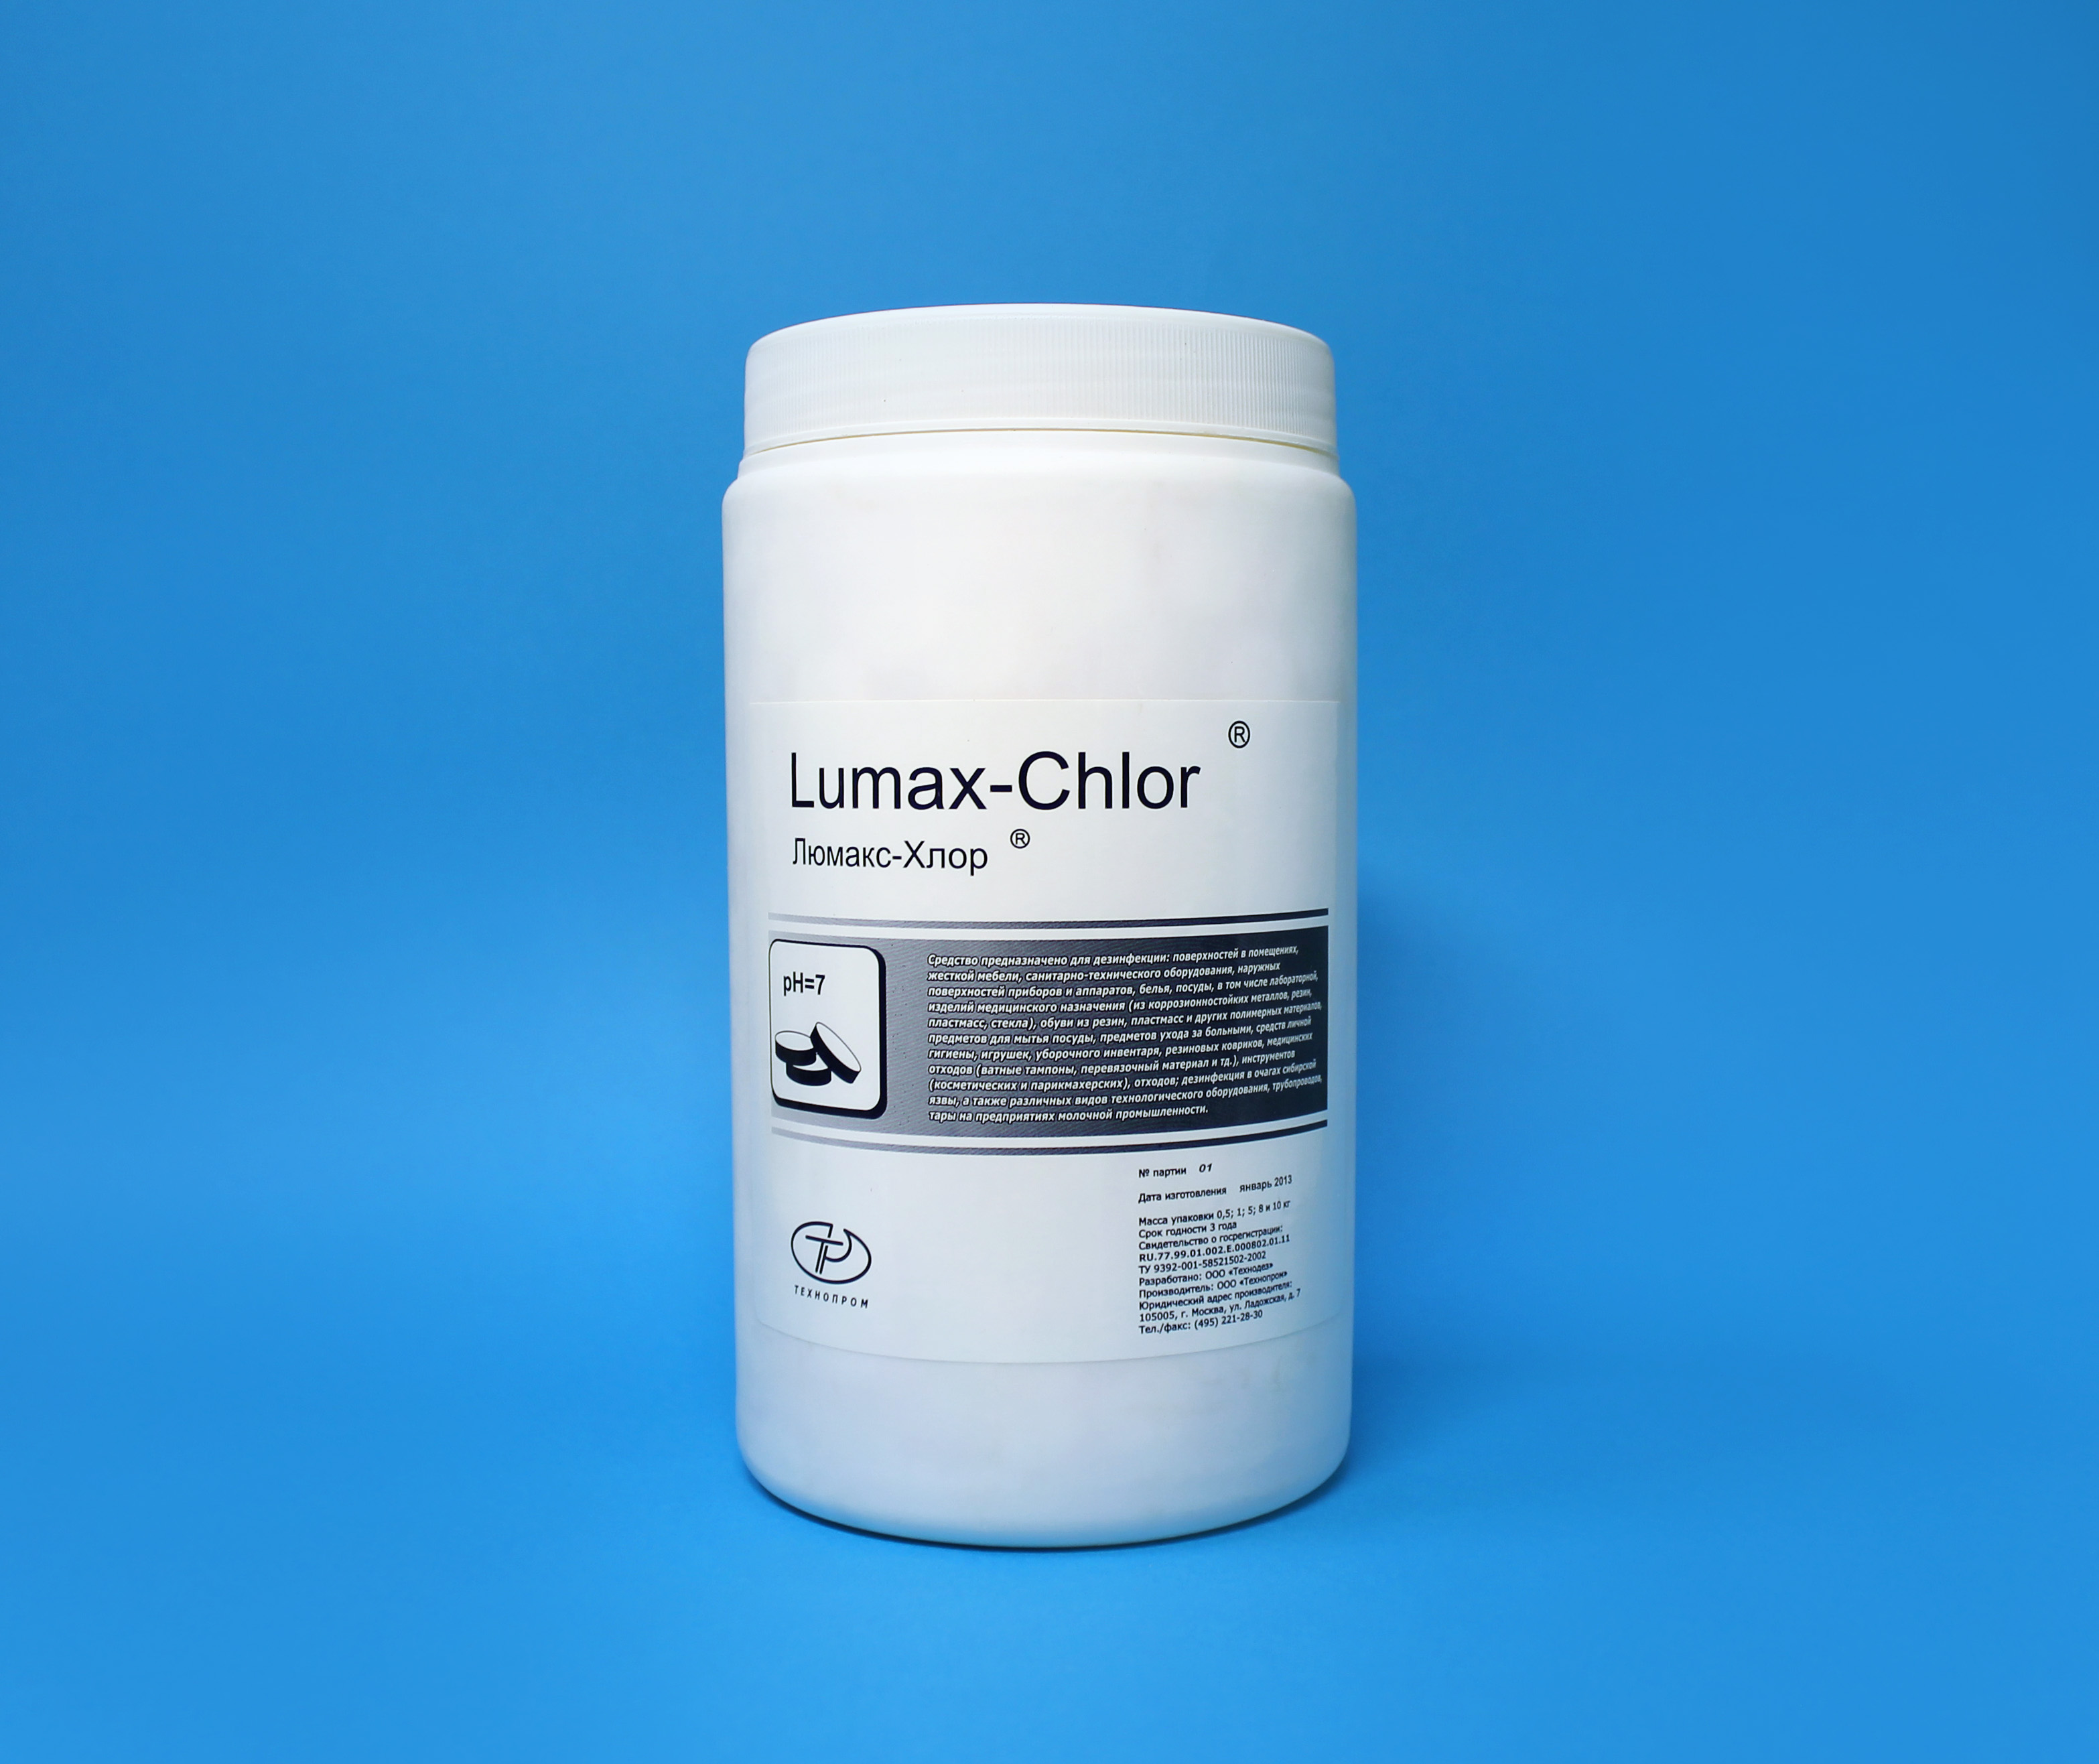 Люмакс-хлор от Химия и Технология